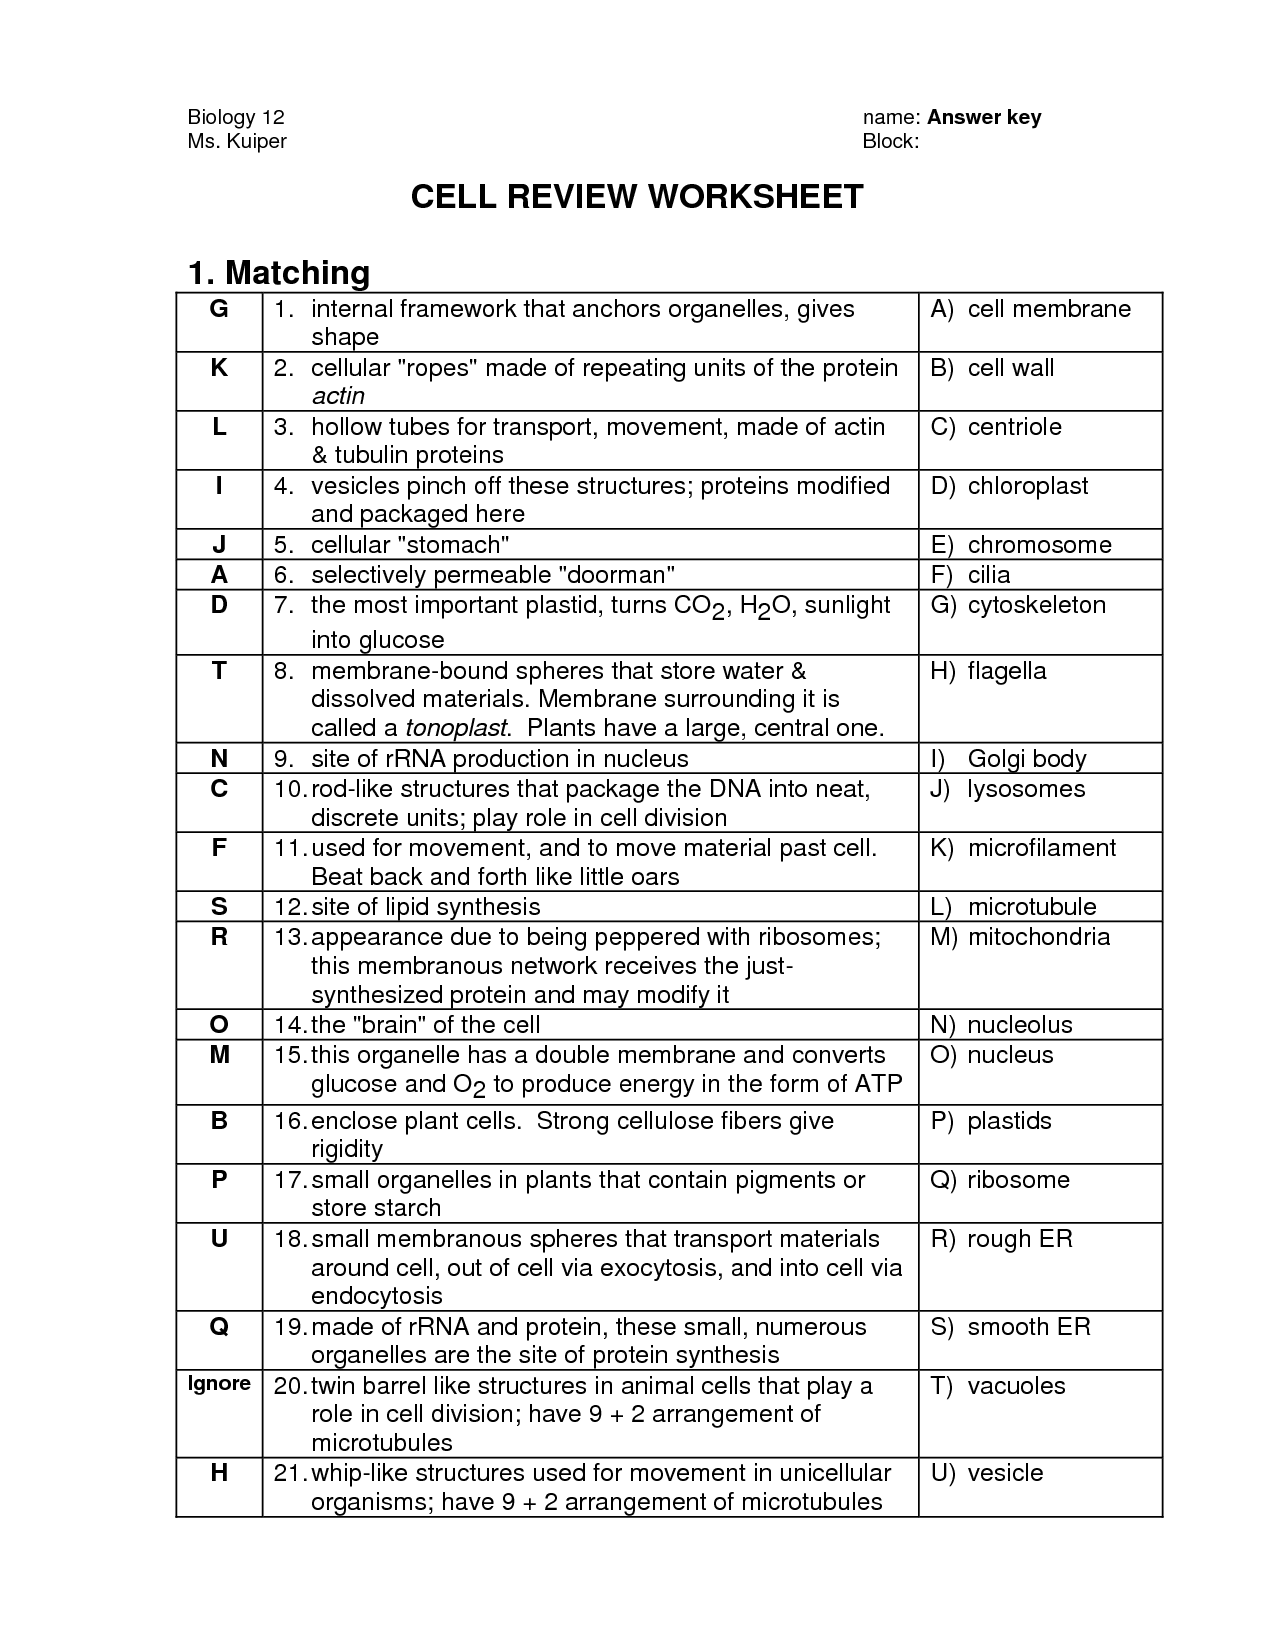 18-best-images-of-biology-cells-worksheets-answer-keys-cell-organelles-worksheet-answer-key